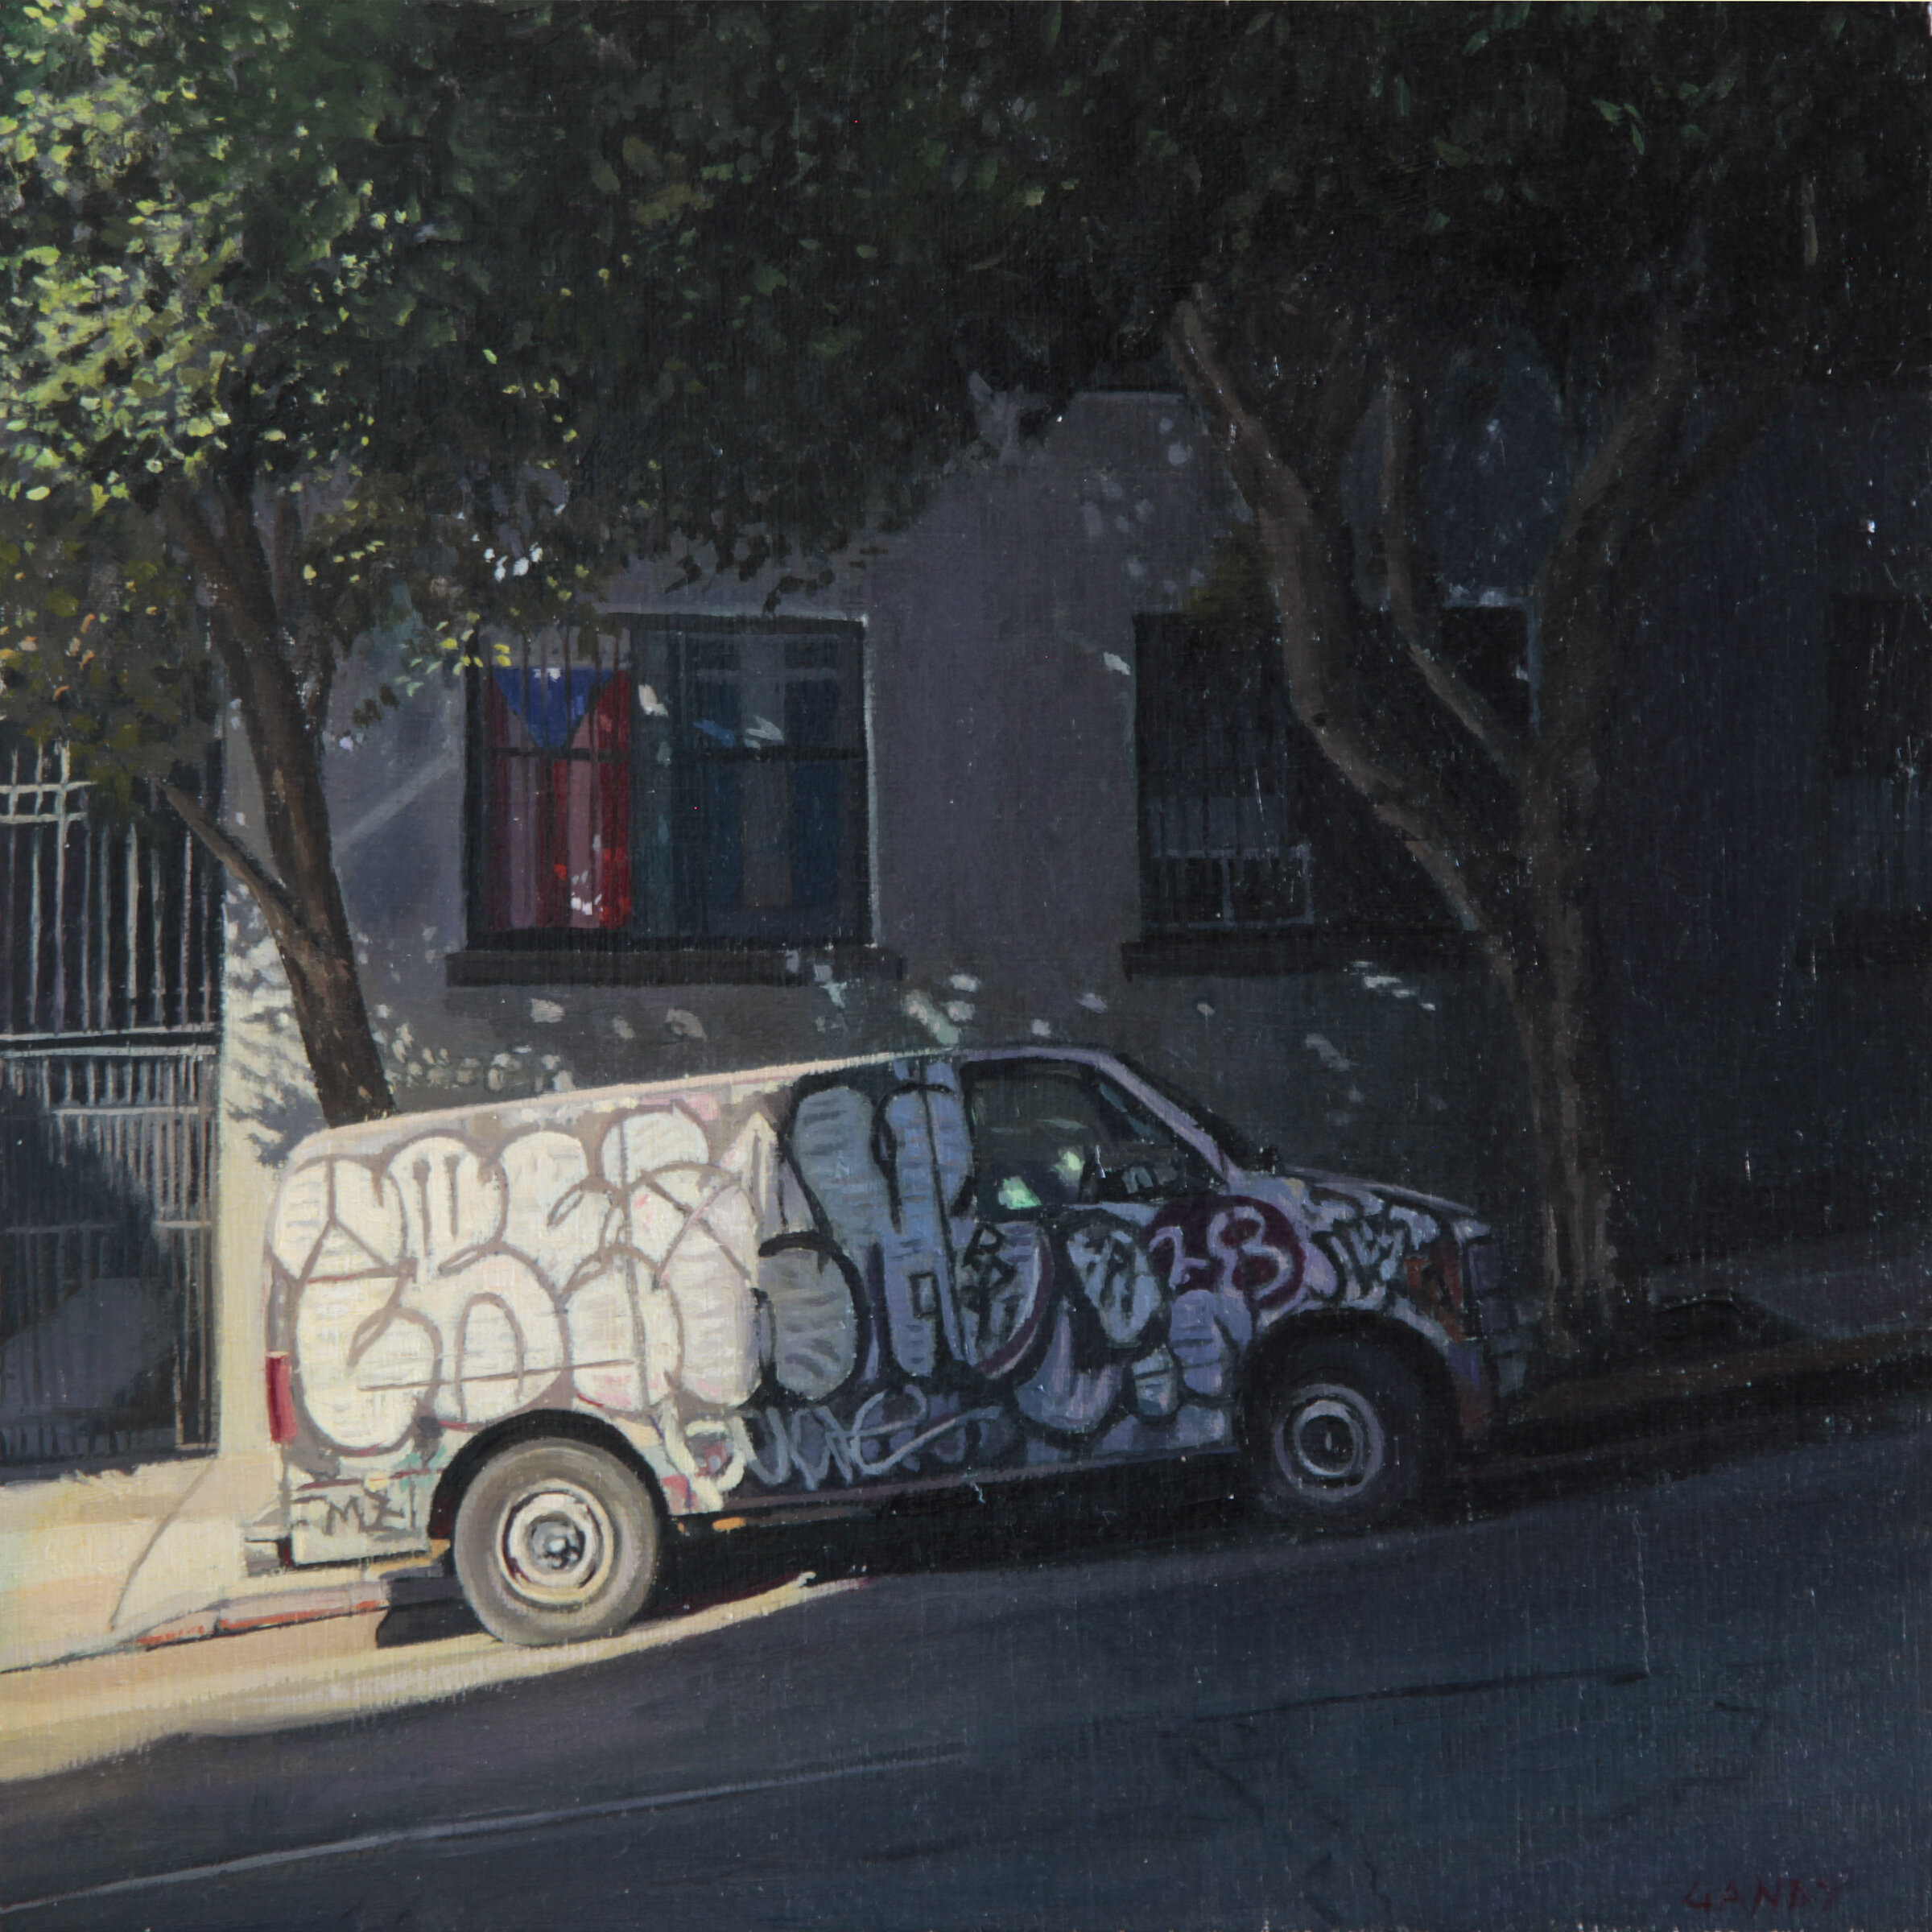 Graffiti Van